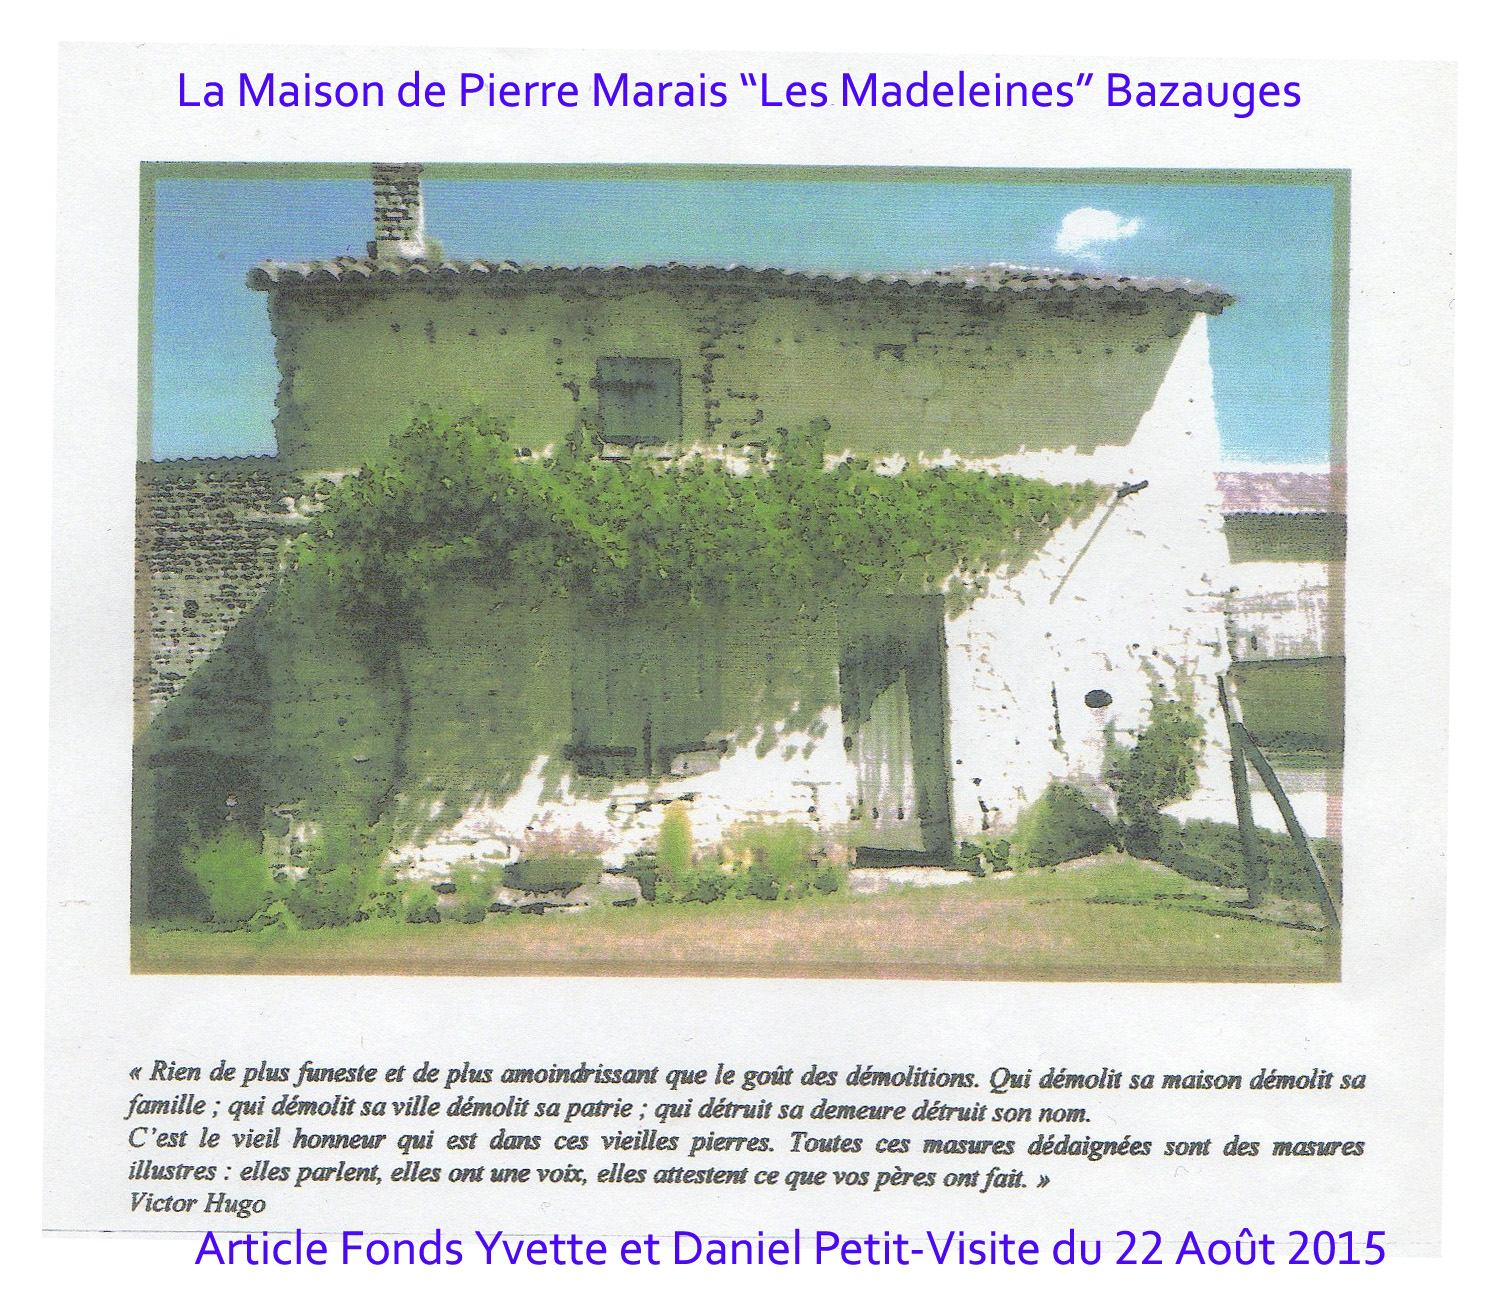 1 b pierre marais bazauges photo maison 22 aout 2015